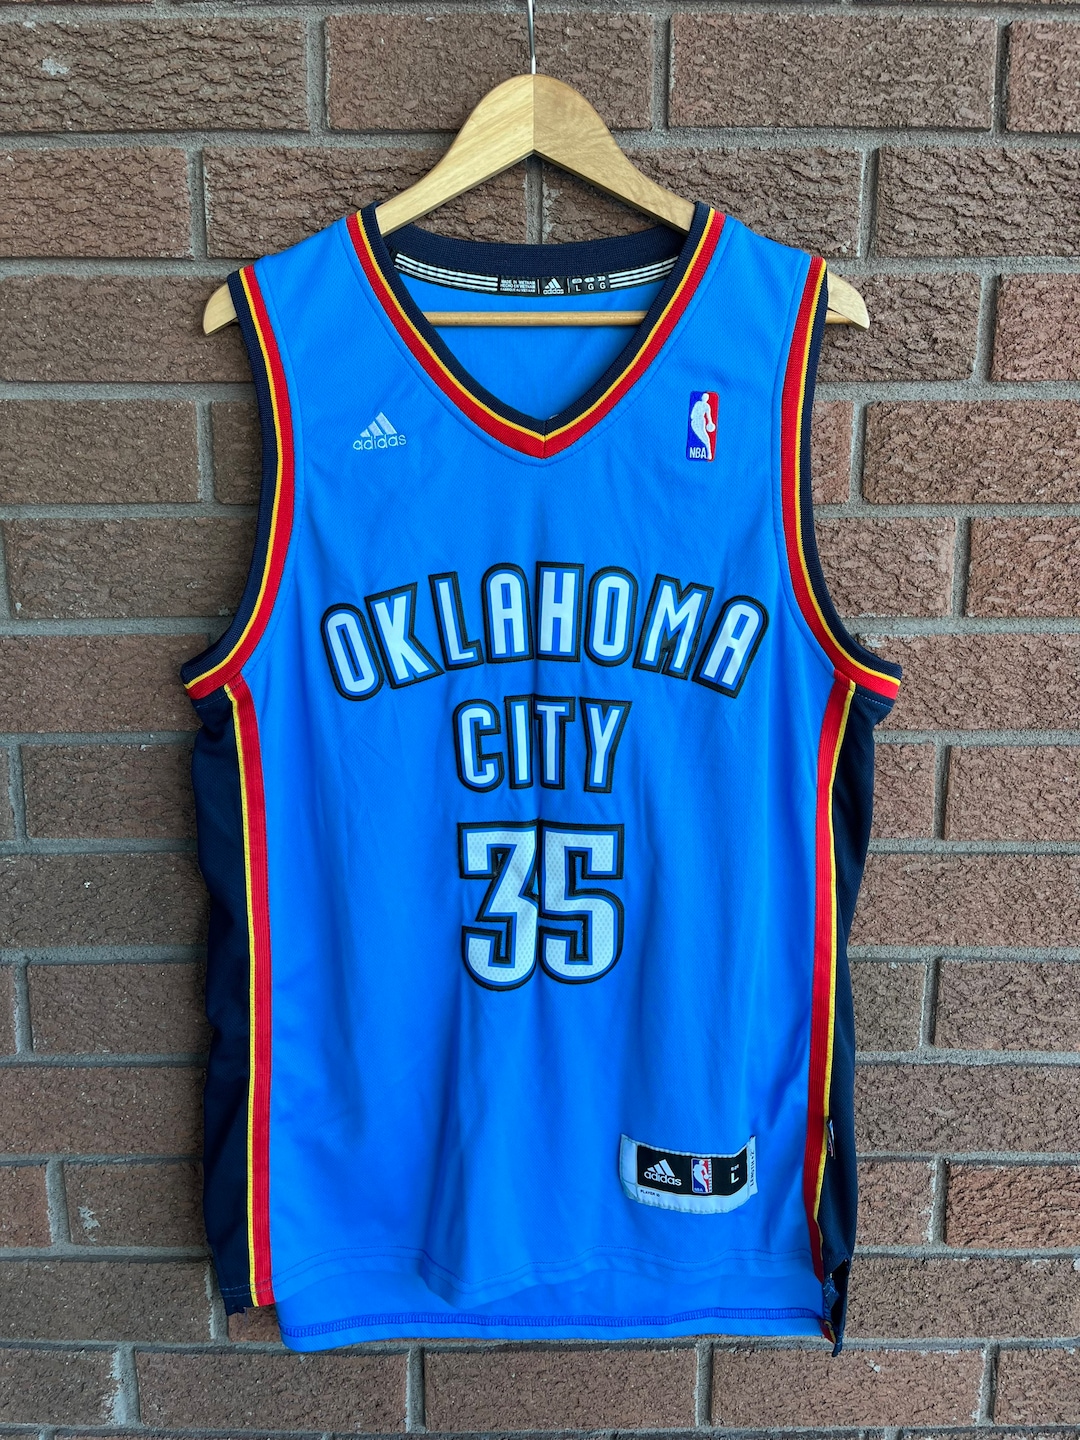 705Vintage Kevin Durant Oklahoma City Thunder NBA Jersey